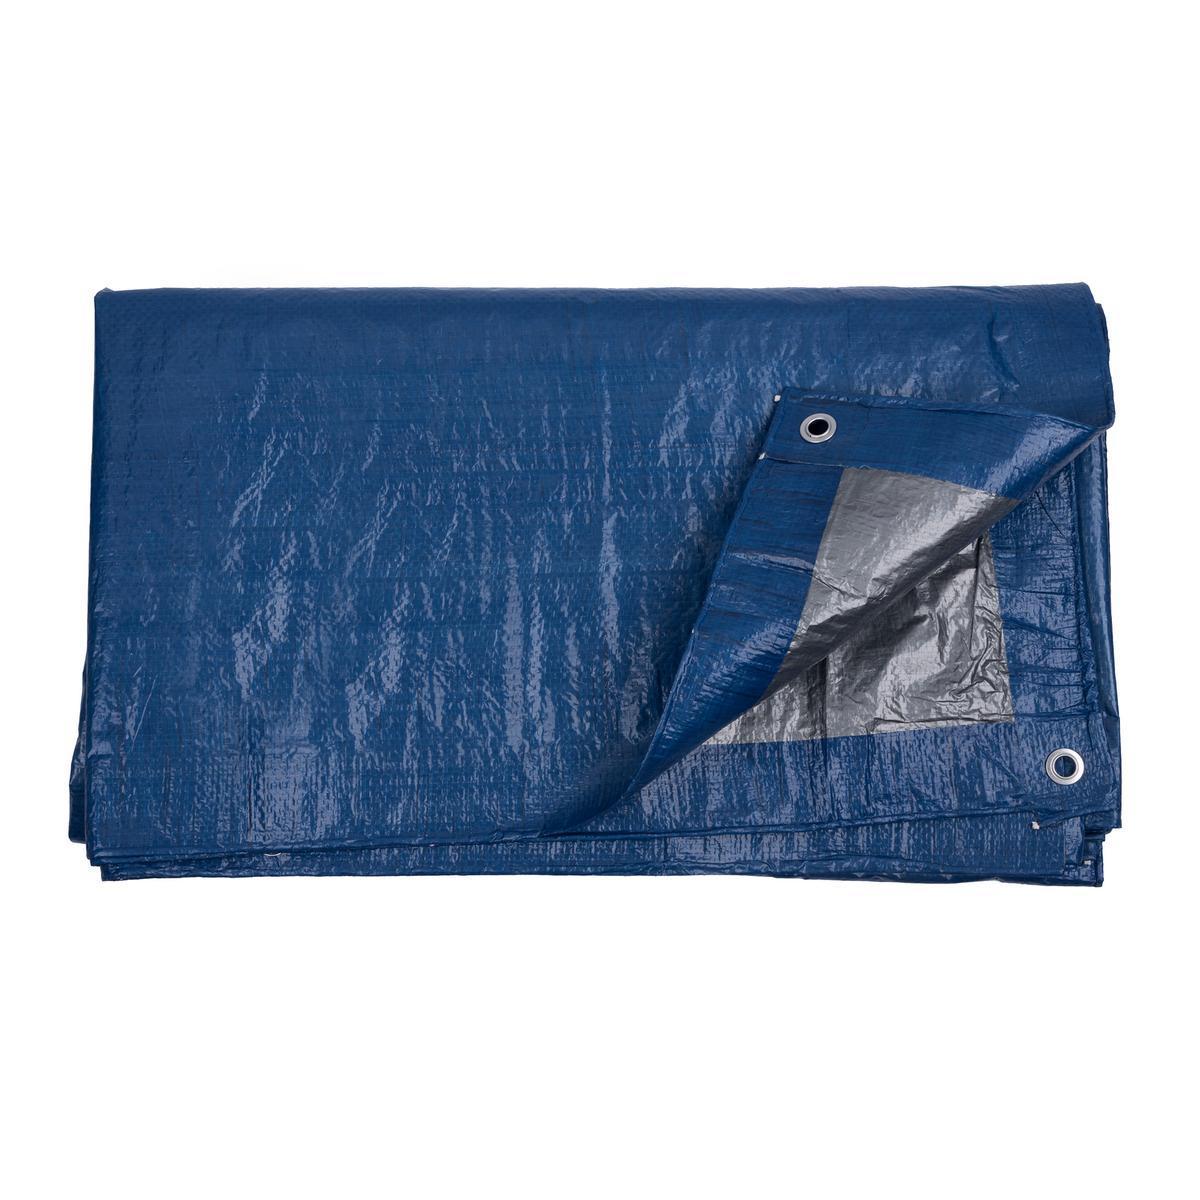 Bâche de protection - 3 x 2 M - Bleu et gris - CULTIVA